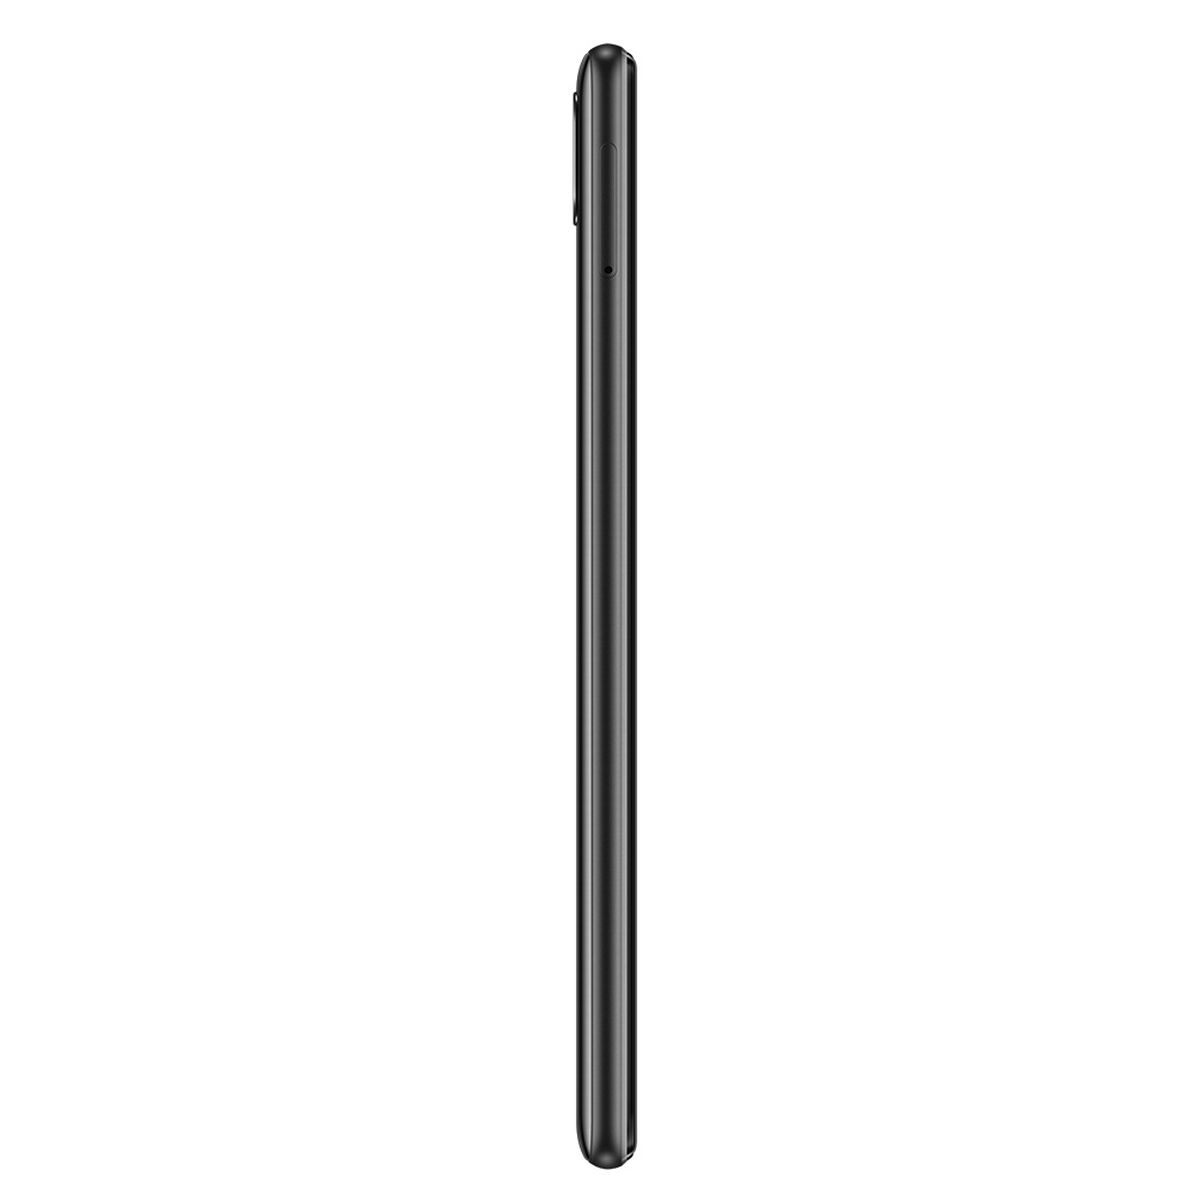 Celular Huawei Y7 64GB 6,26" Negro Claro